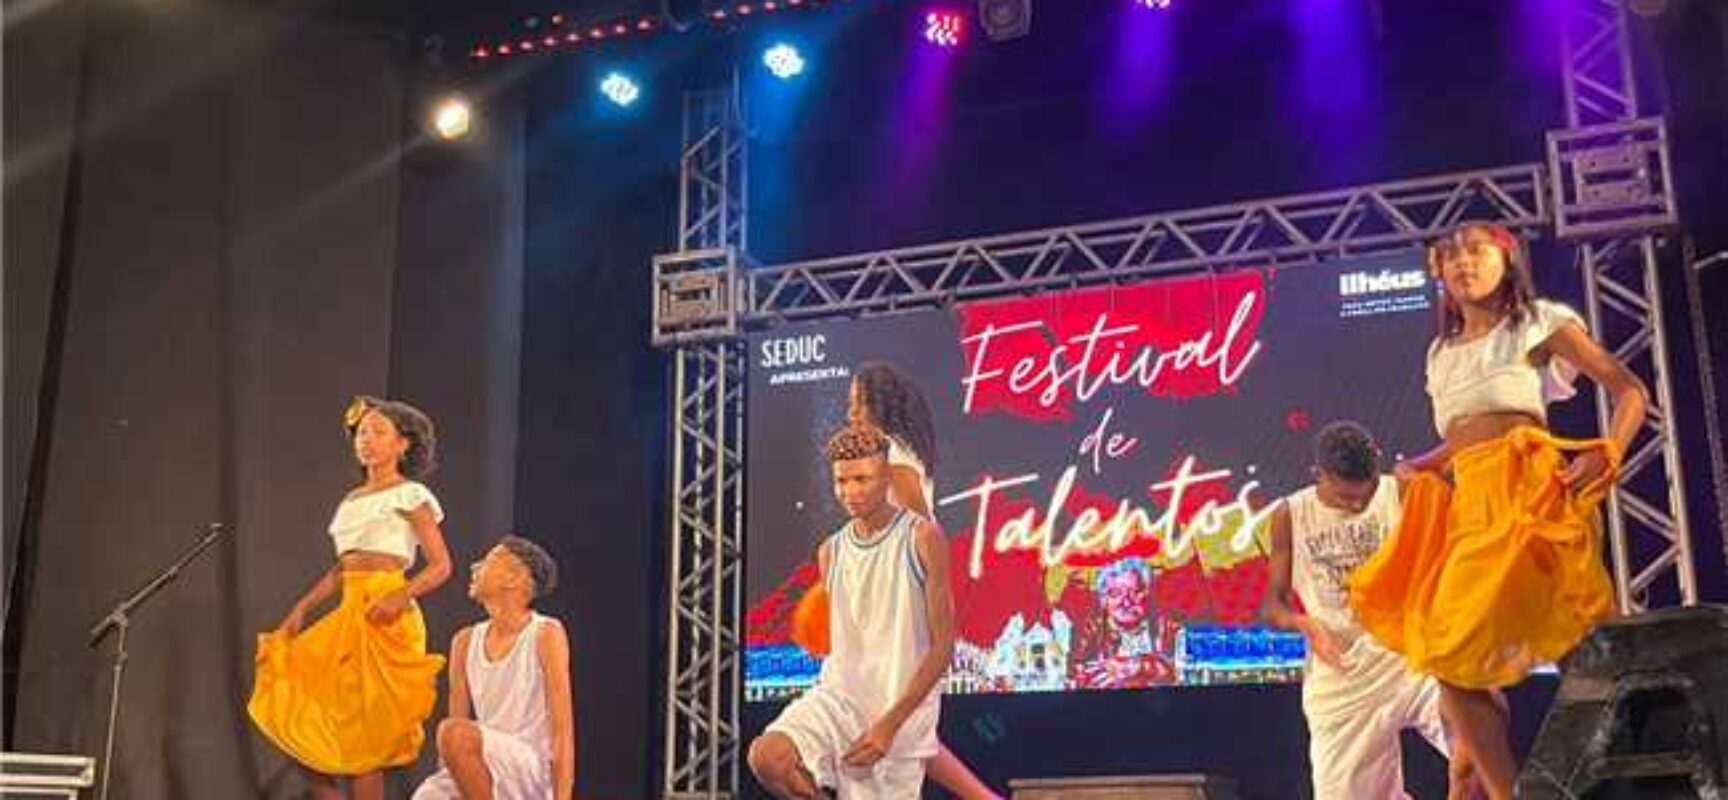 Festival de Talentos da rede municipal de Ilhéus revisita vida e obra de Jorge Amado